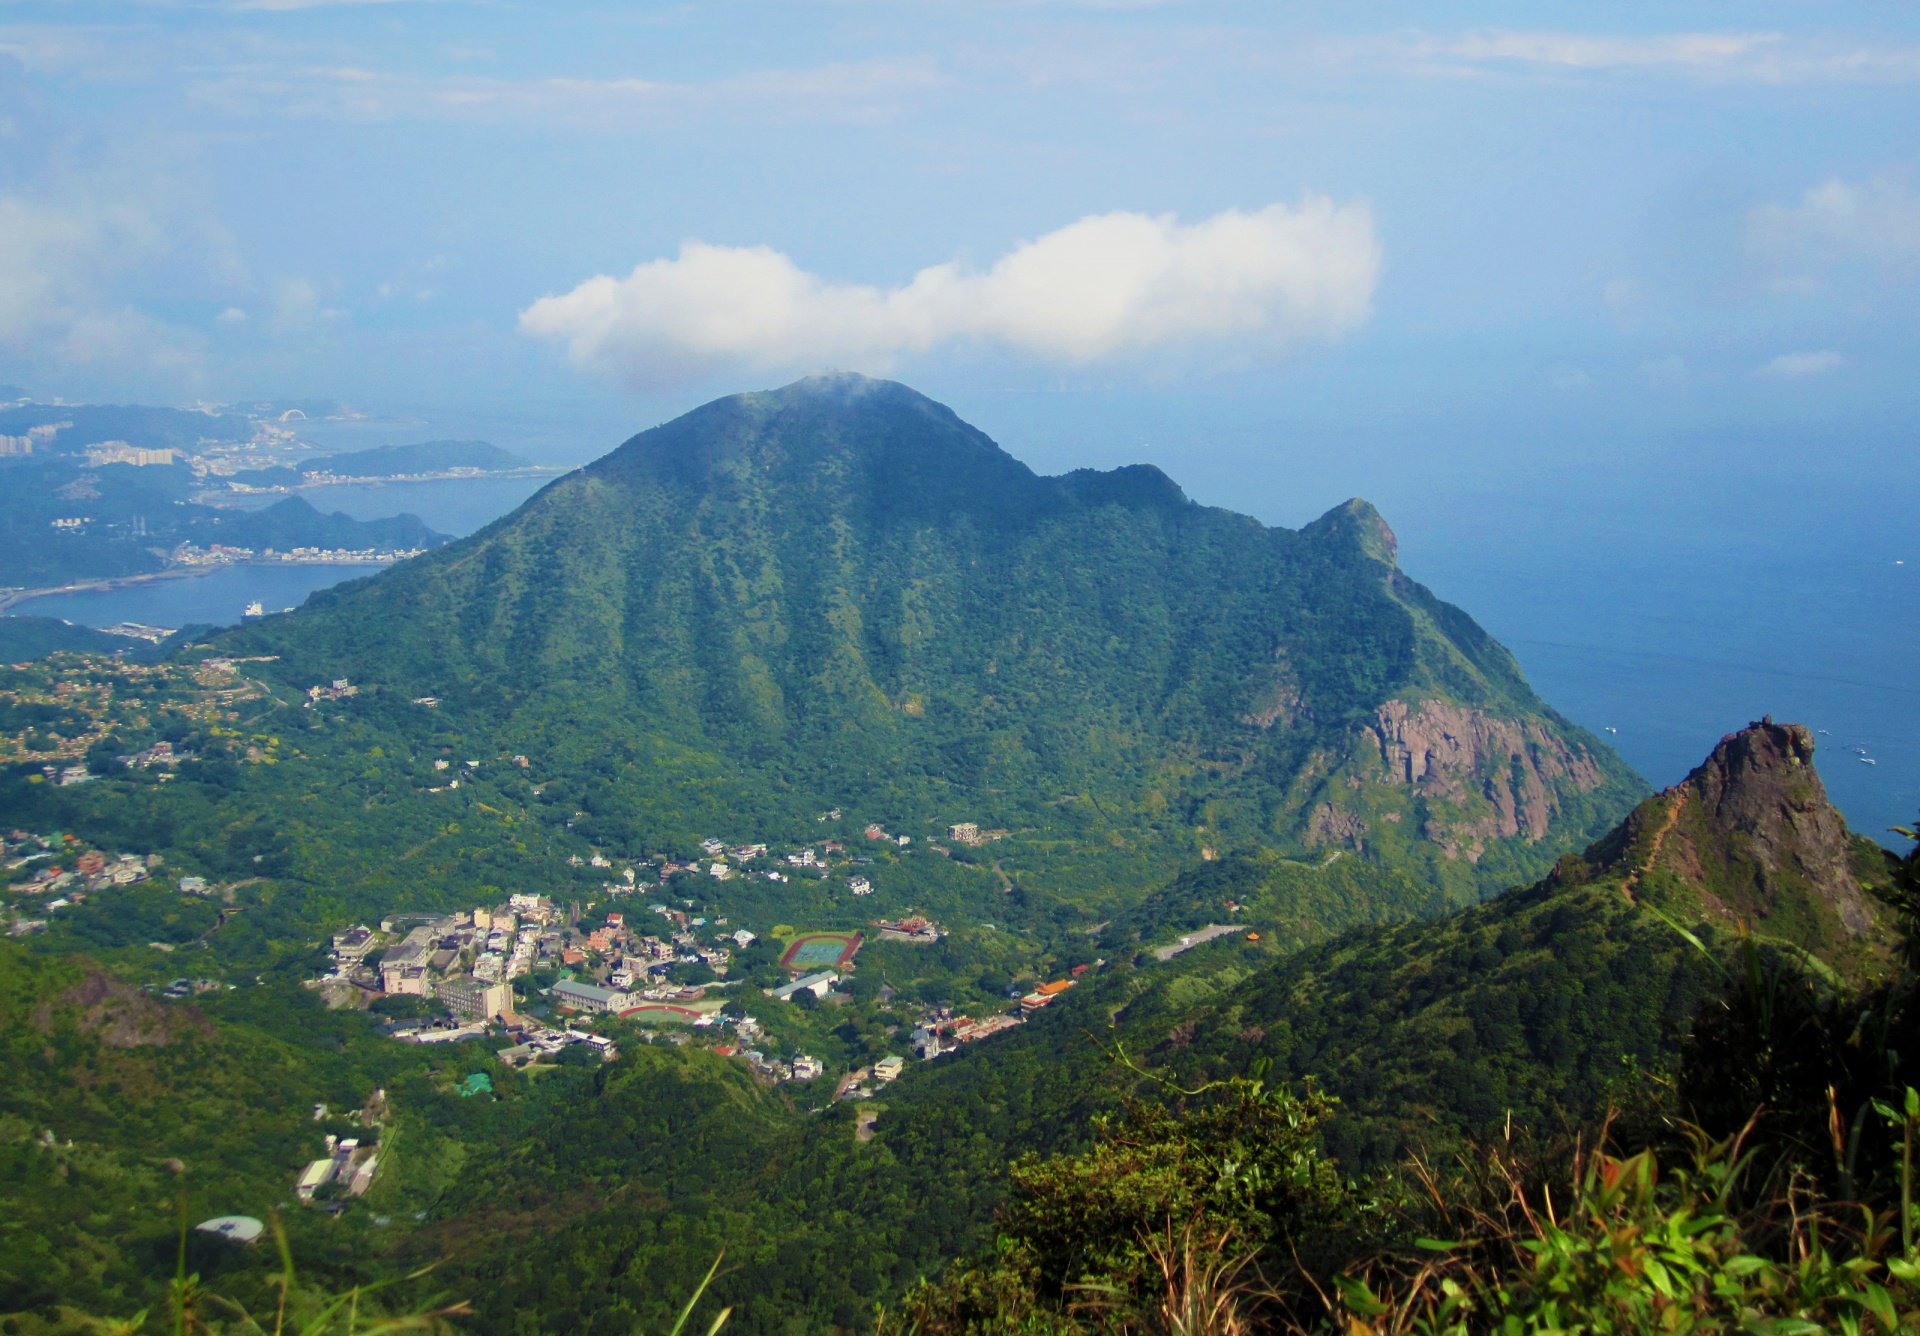 Taiwan Mountain Scenes 74